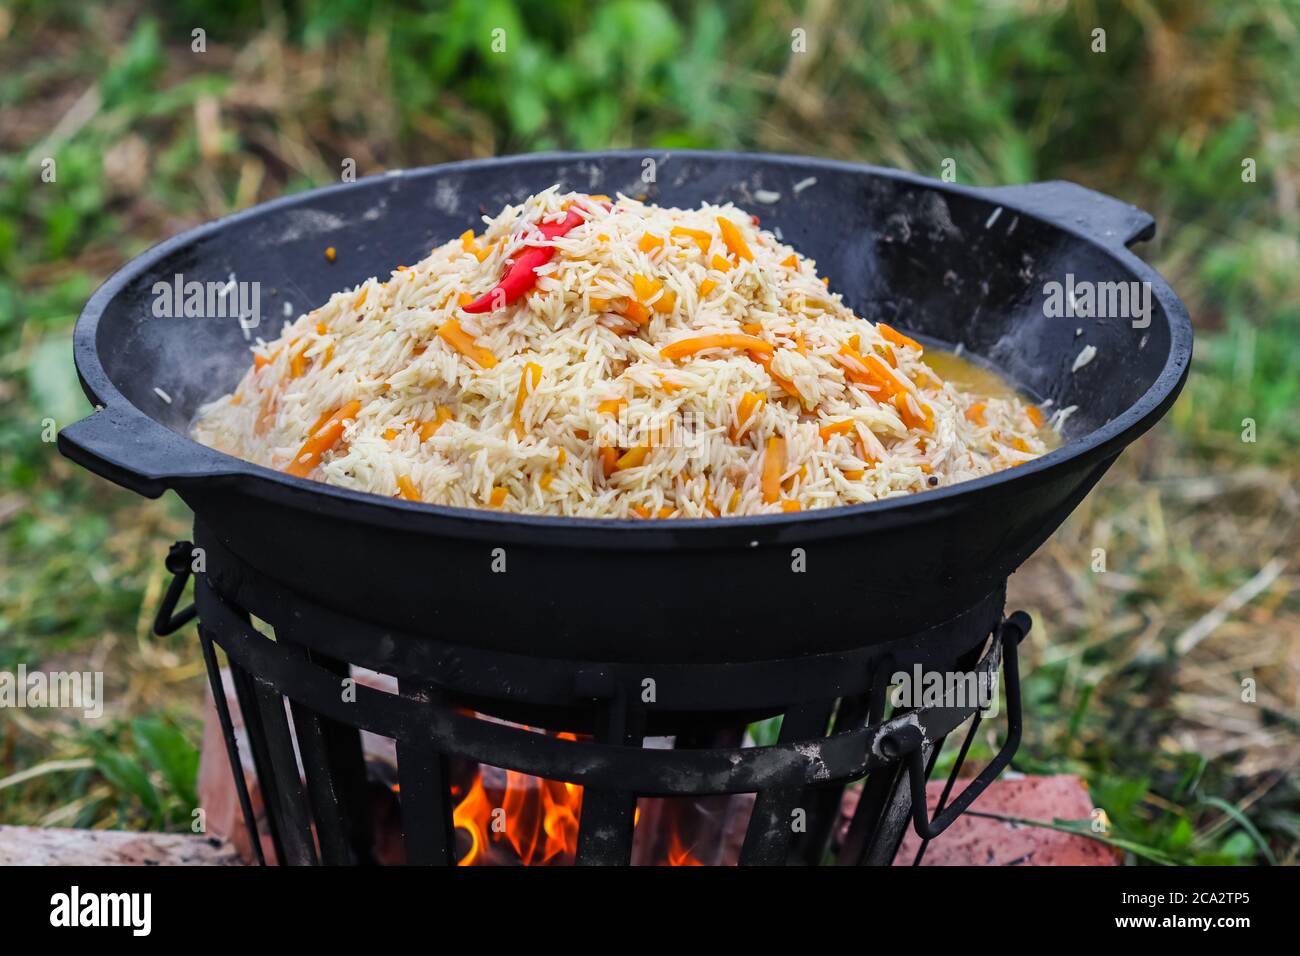 https://c8.alamy.com/compes/2ca2tp5/cocinar-arroz-pilaf-en-una-gran-olla-de-hierro-fundido-al-fuego-2ca2tp5.jpg